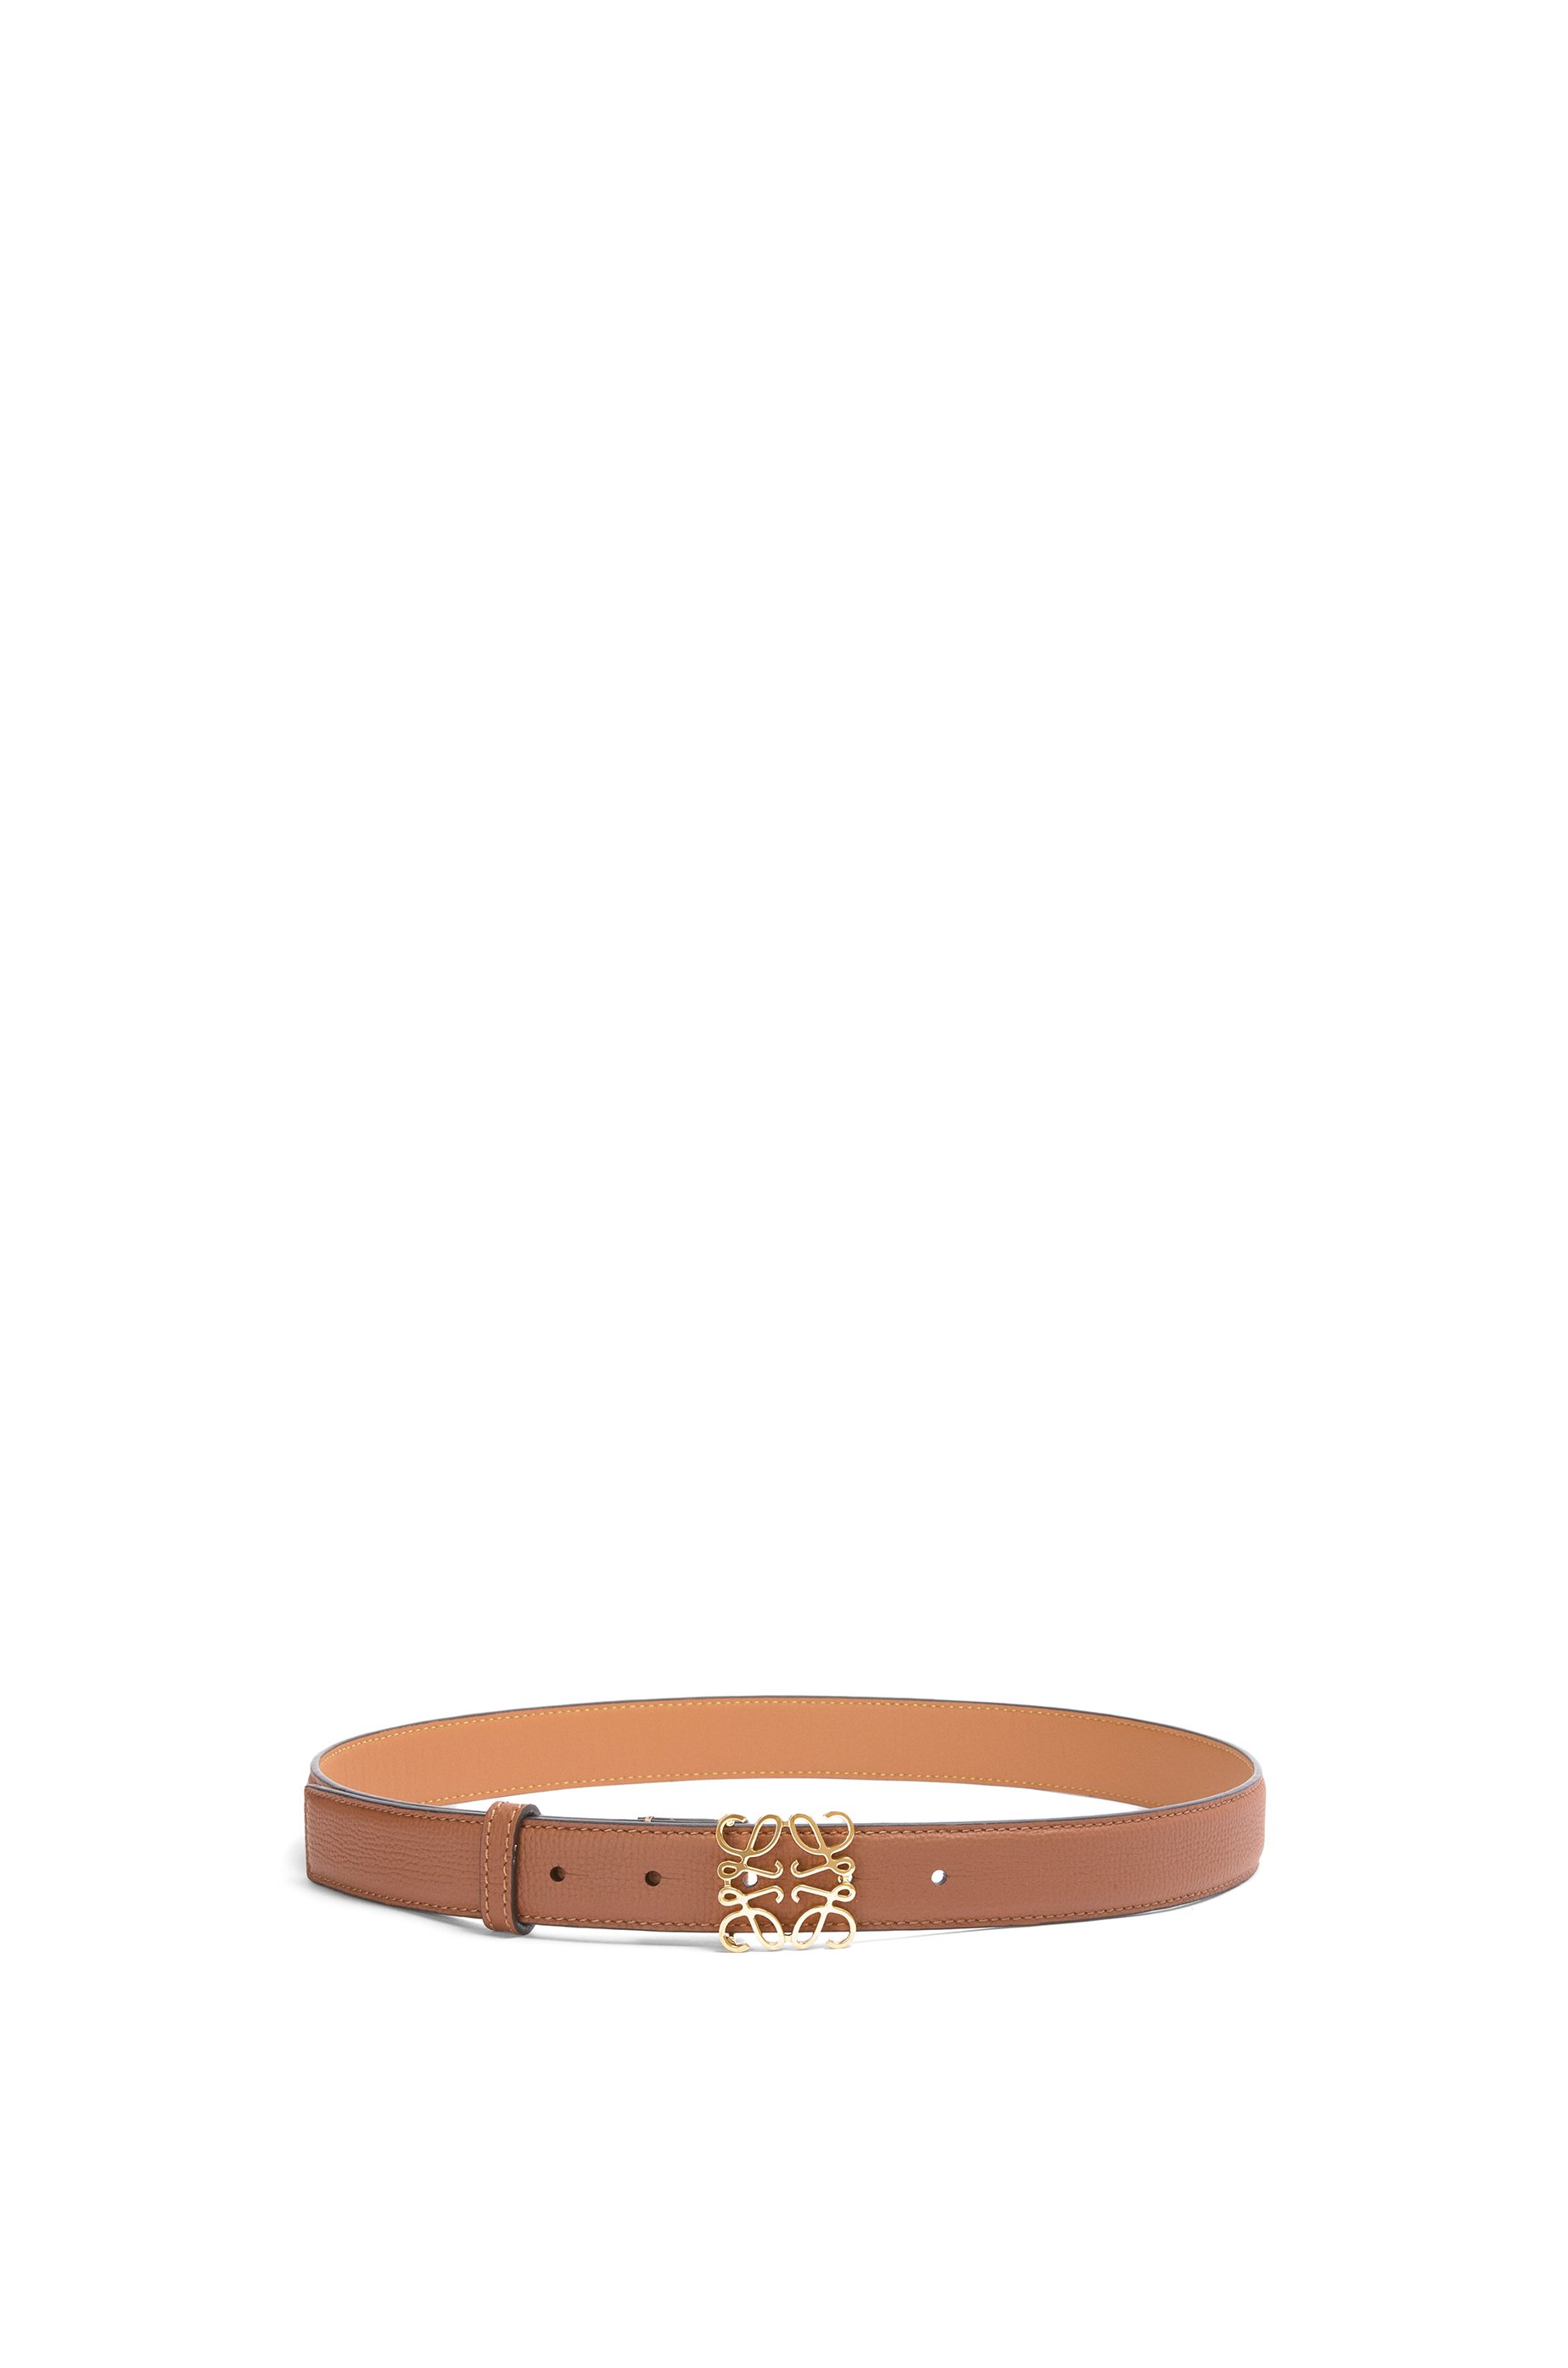 Luxury belts for women